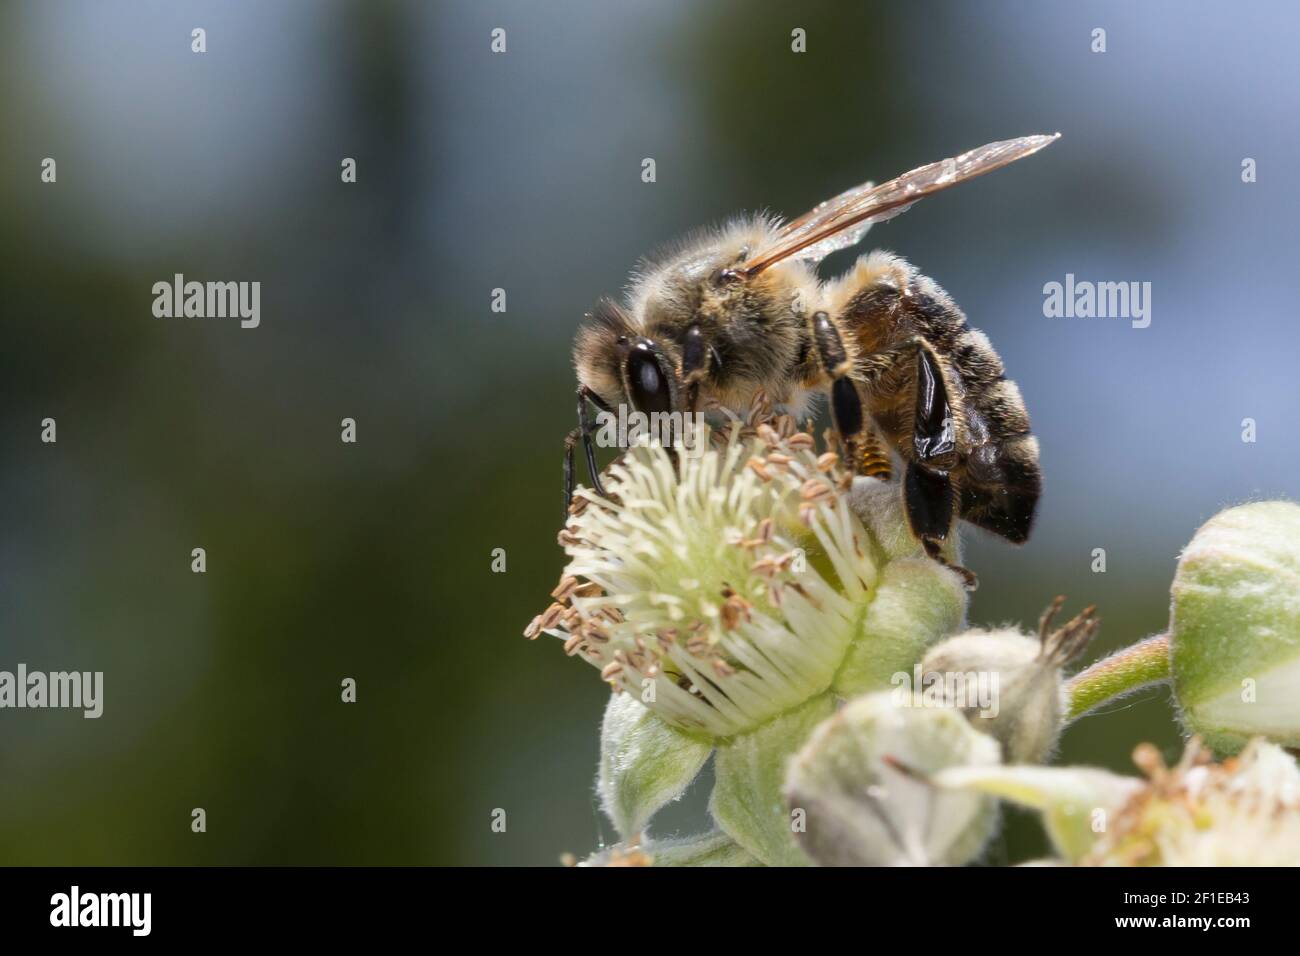 Honigbiene, Honig-Biene, Europäische Honigbiene, Westliche Honigbiene, Weibchen, Biene, Bienen, Apis mellifera, Apis mellifica, honey bee, hive bee, w Stock Photo